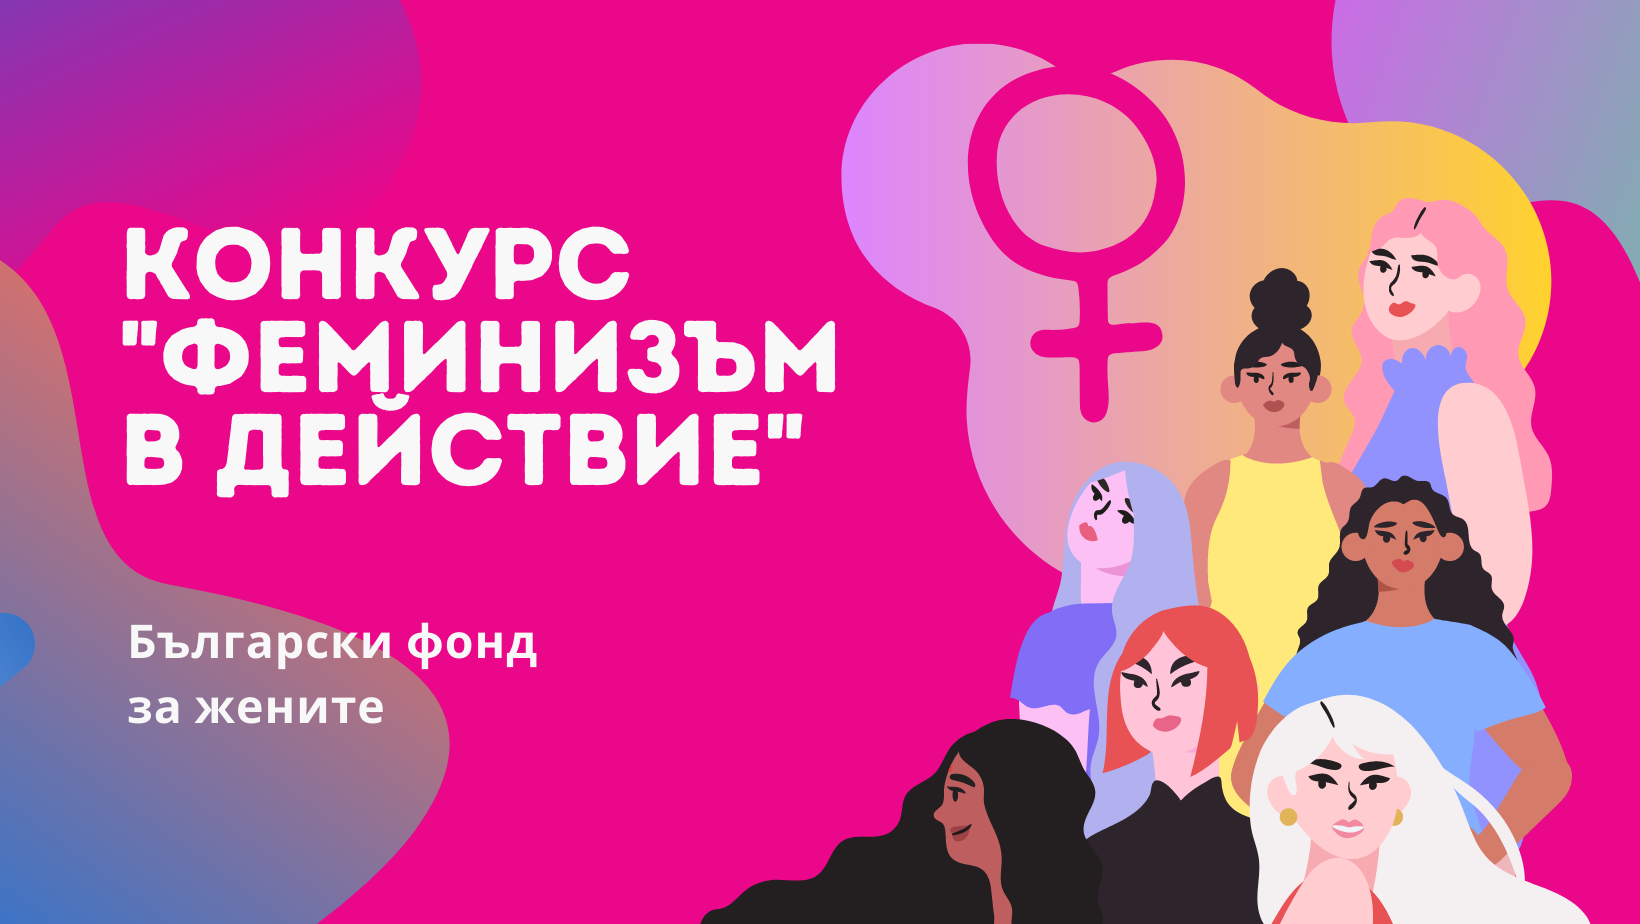 12 организации ще получат финансиране в конкурса „Феминизъм в действие“ на Български фонд за жените